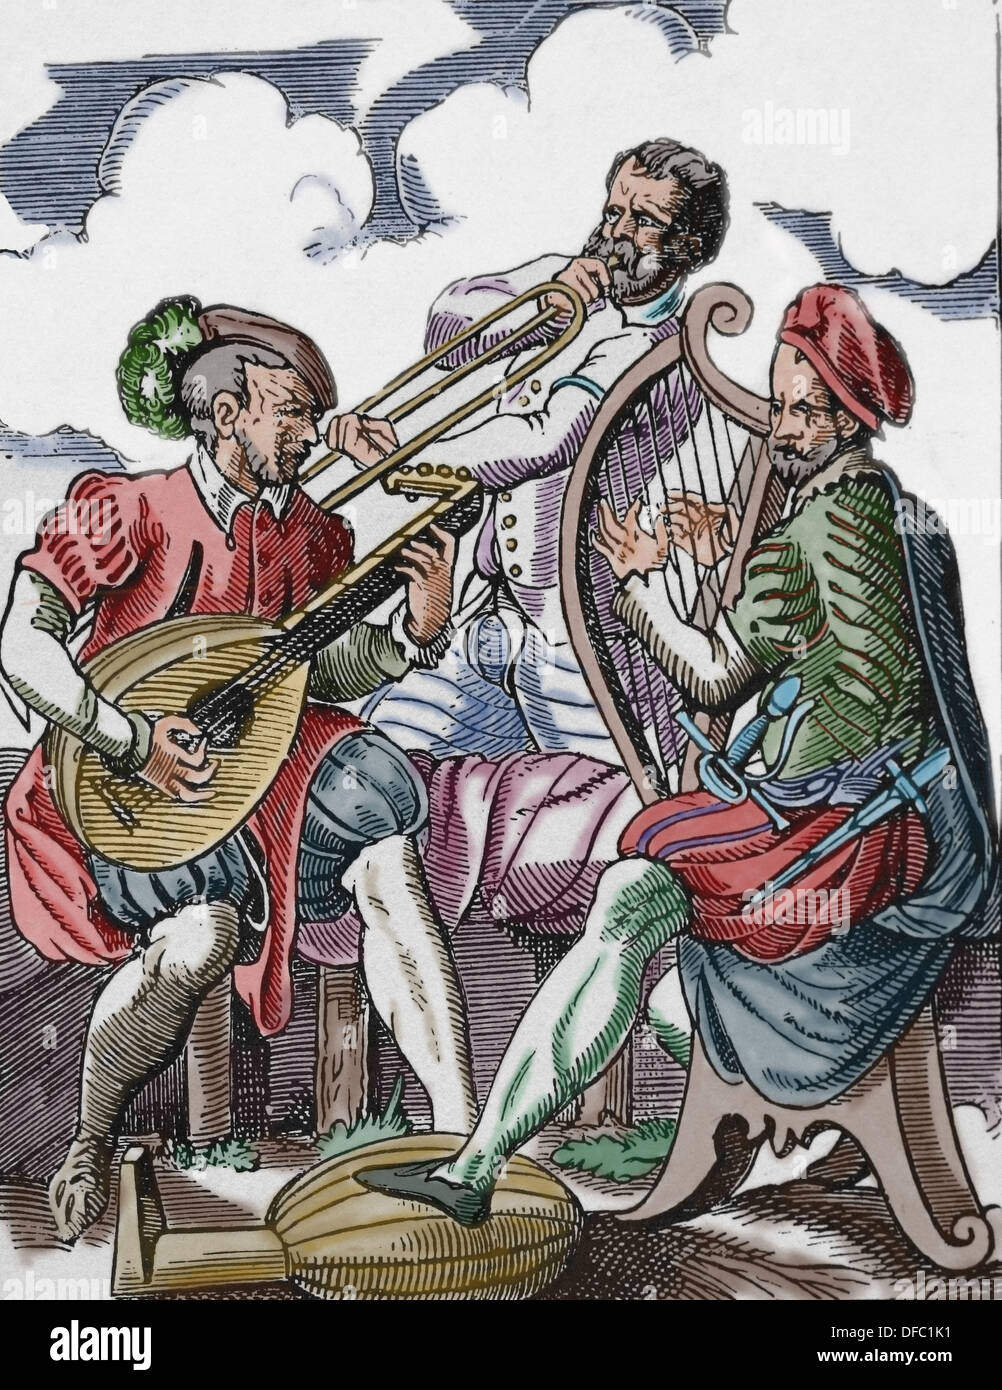 Europa. Musikgeschichte. 16. Jahrhundert. Musiker spielen verschiedene Musikinstrumente. Gravur des 19. Jahrhunderts. Spätere Färbung. Stockfoto